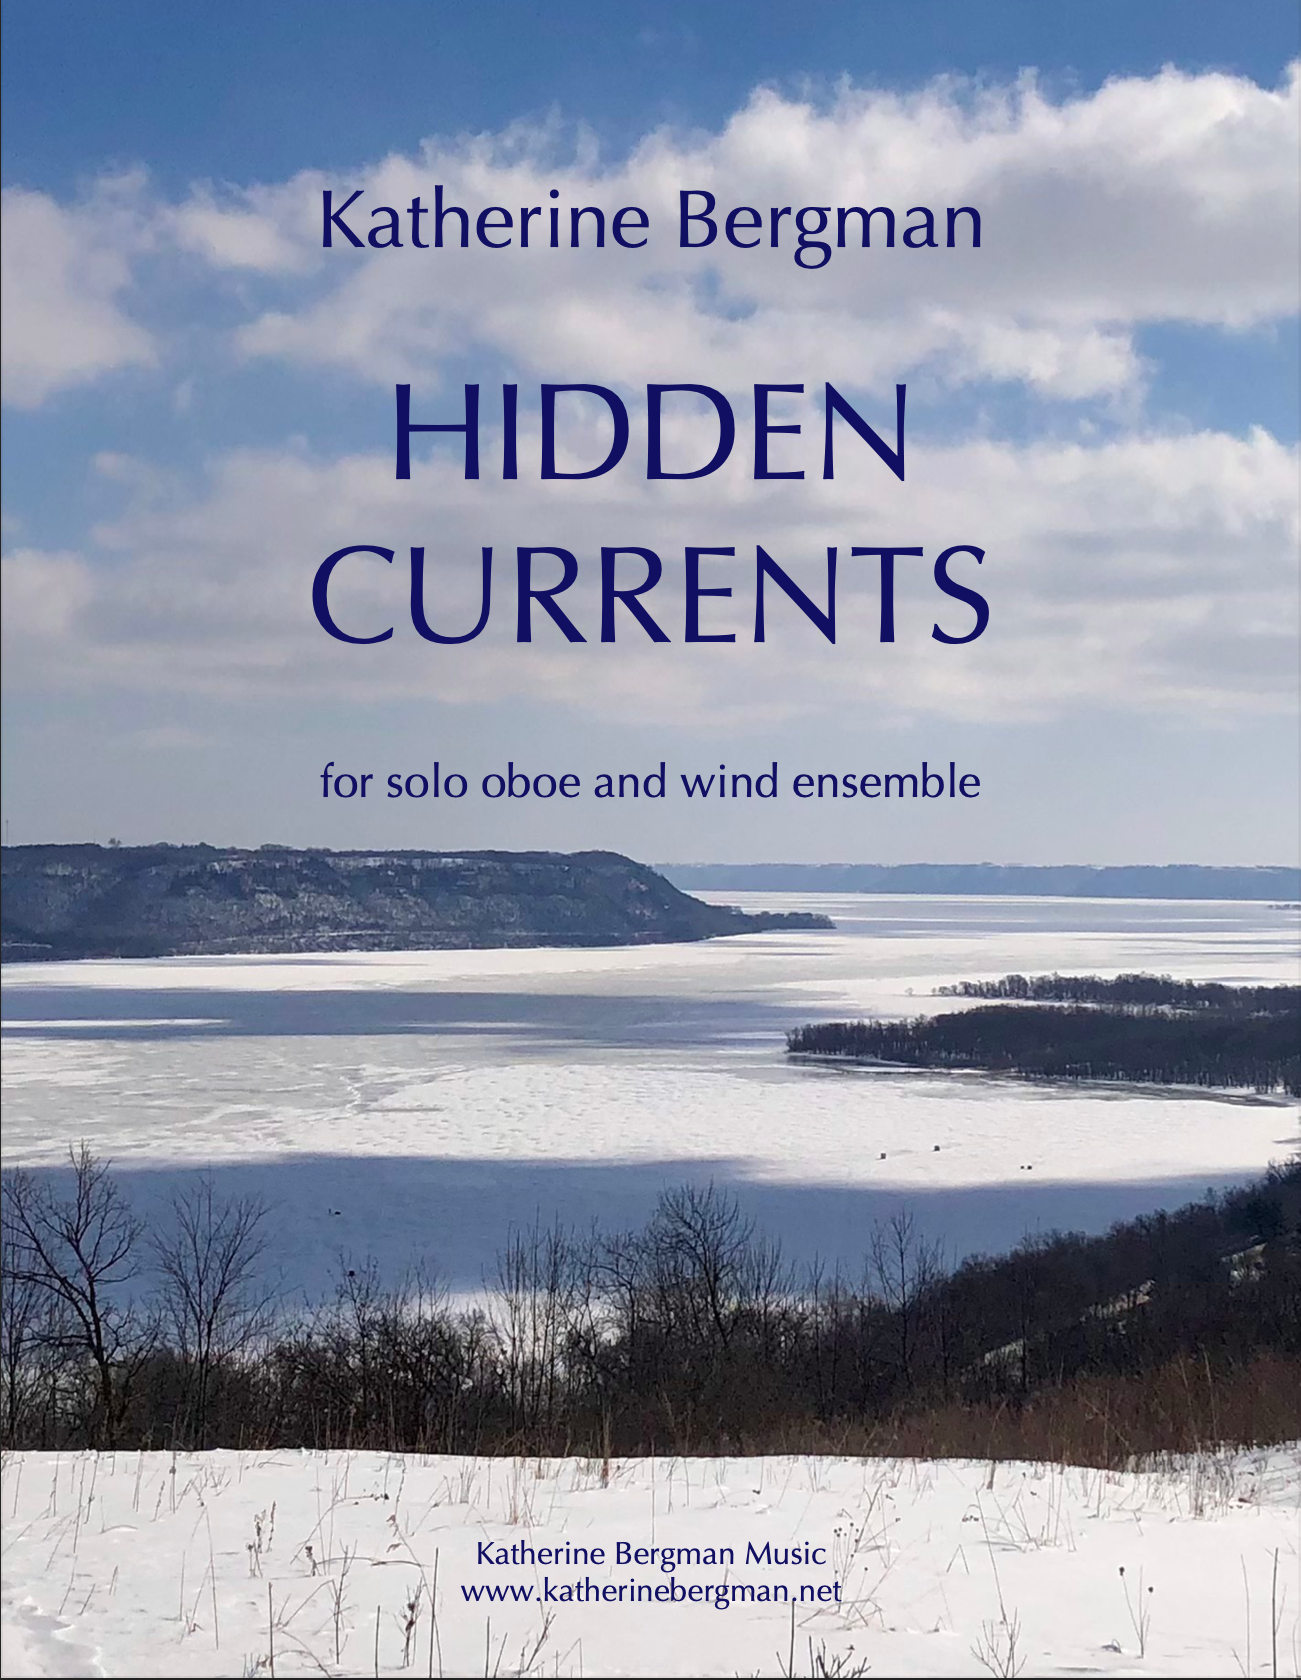 Hidden Currents by Katherine Bergman